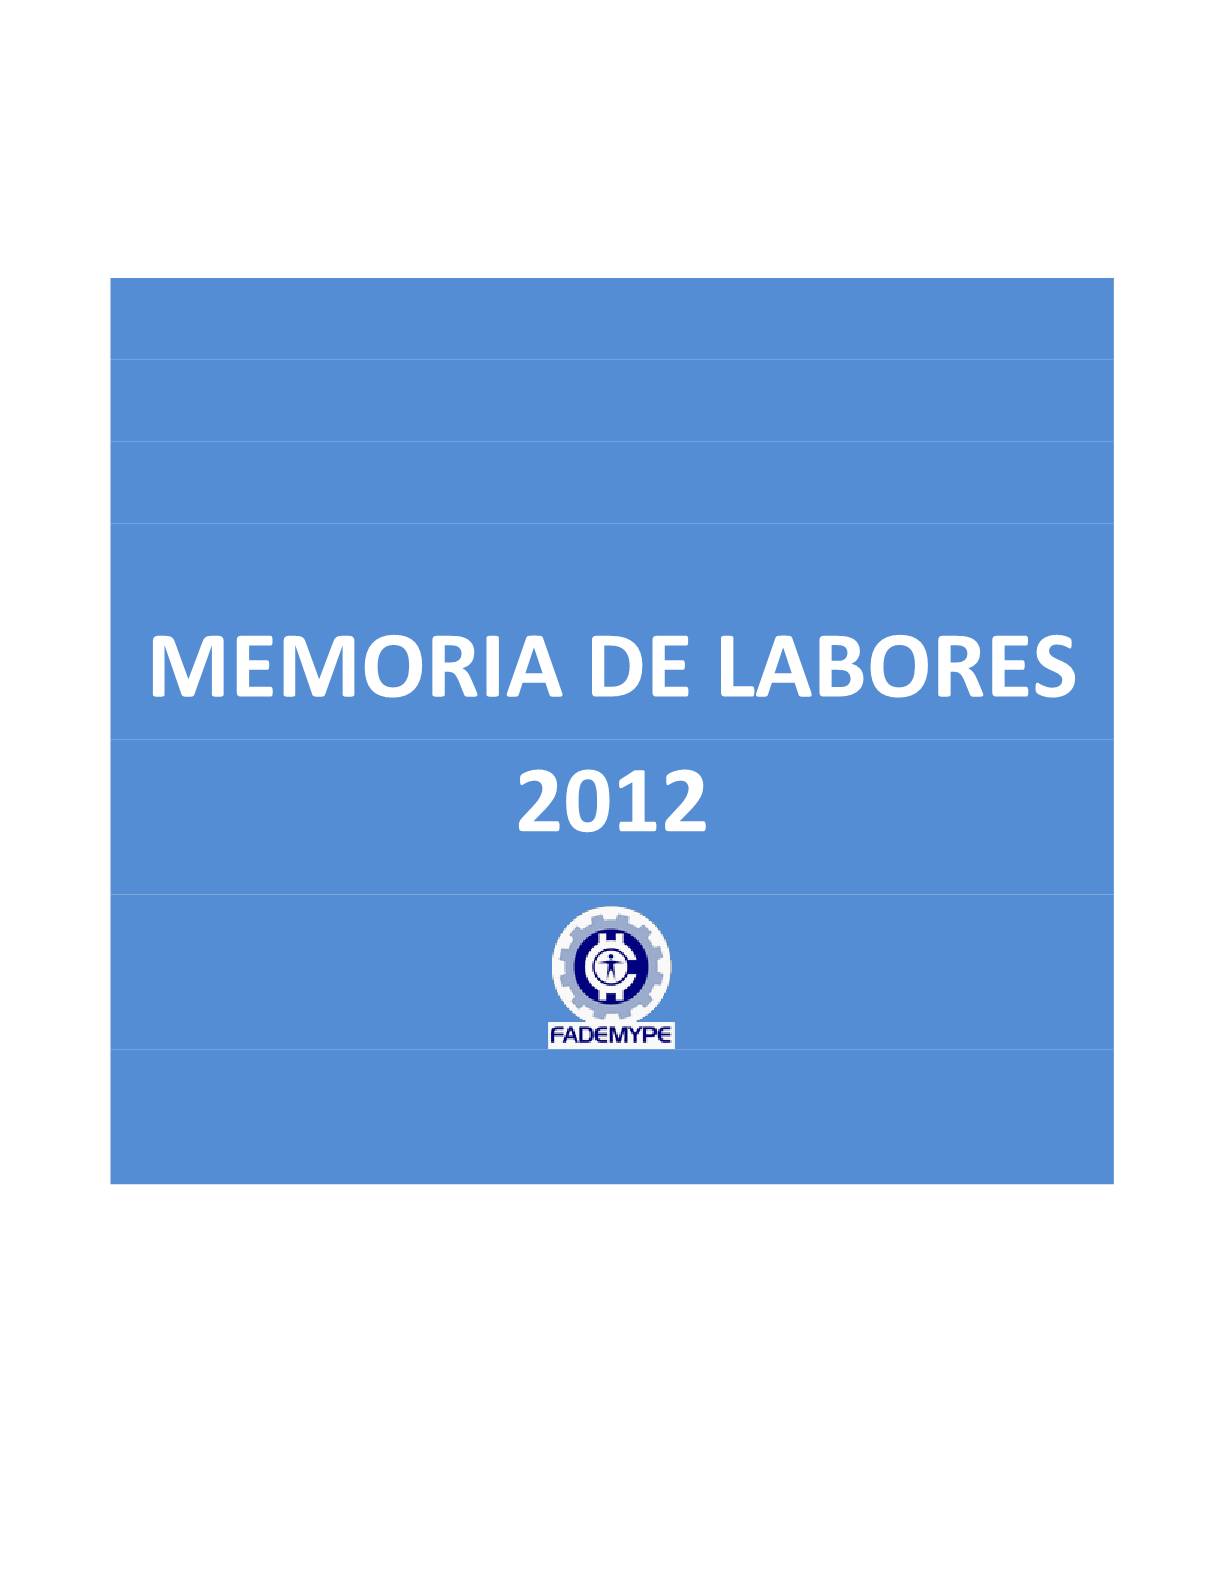 Memoria de labores 2012